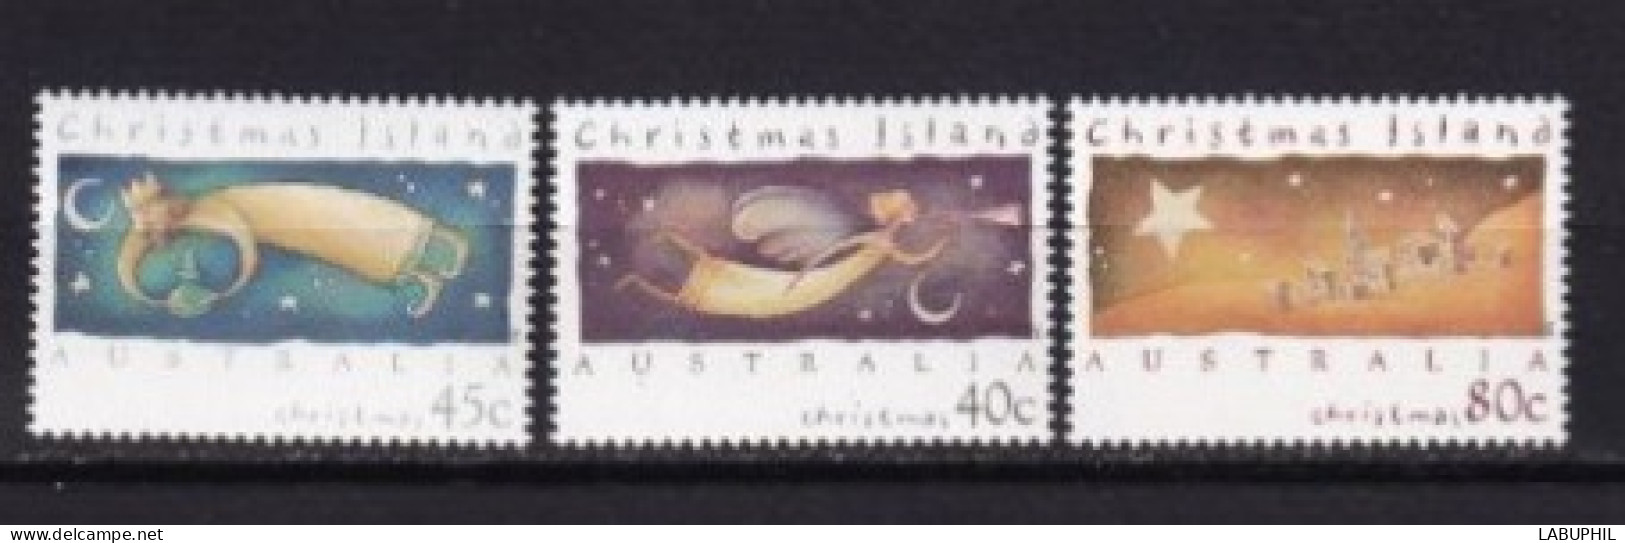 CHRISTHMAS ISLAND  MNH  ** 1994 - Christmas Island